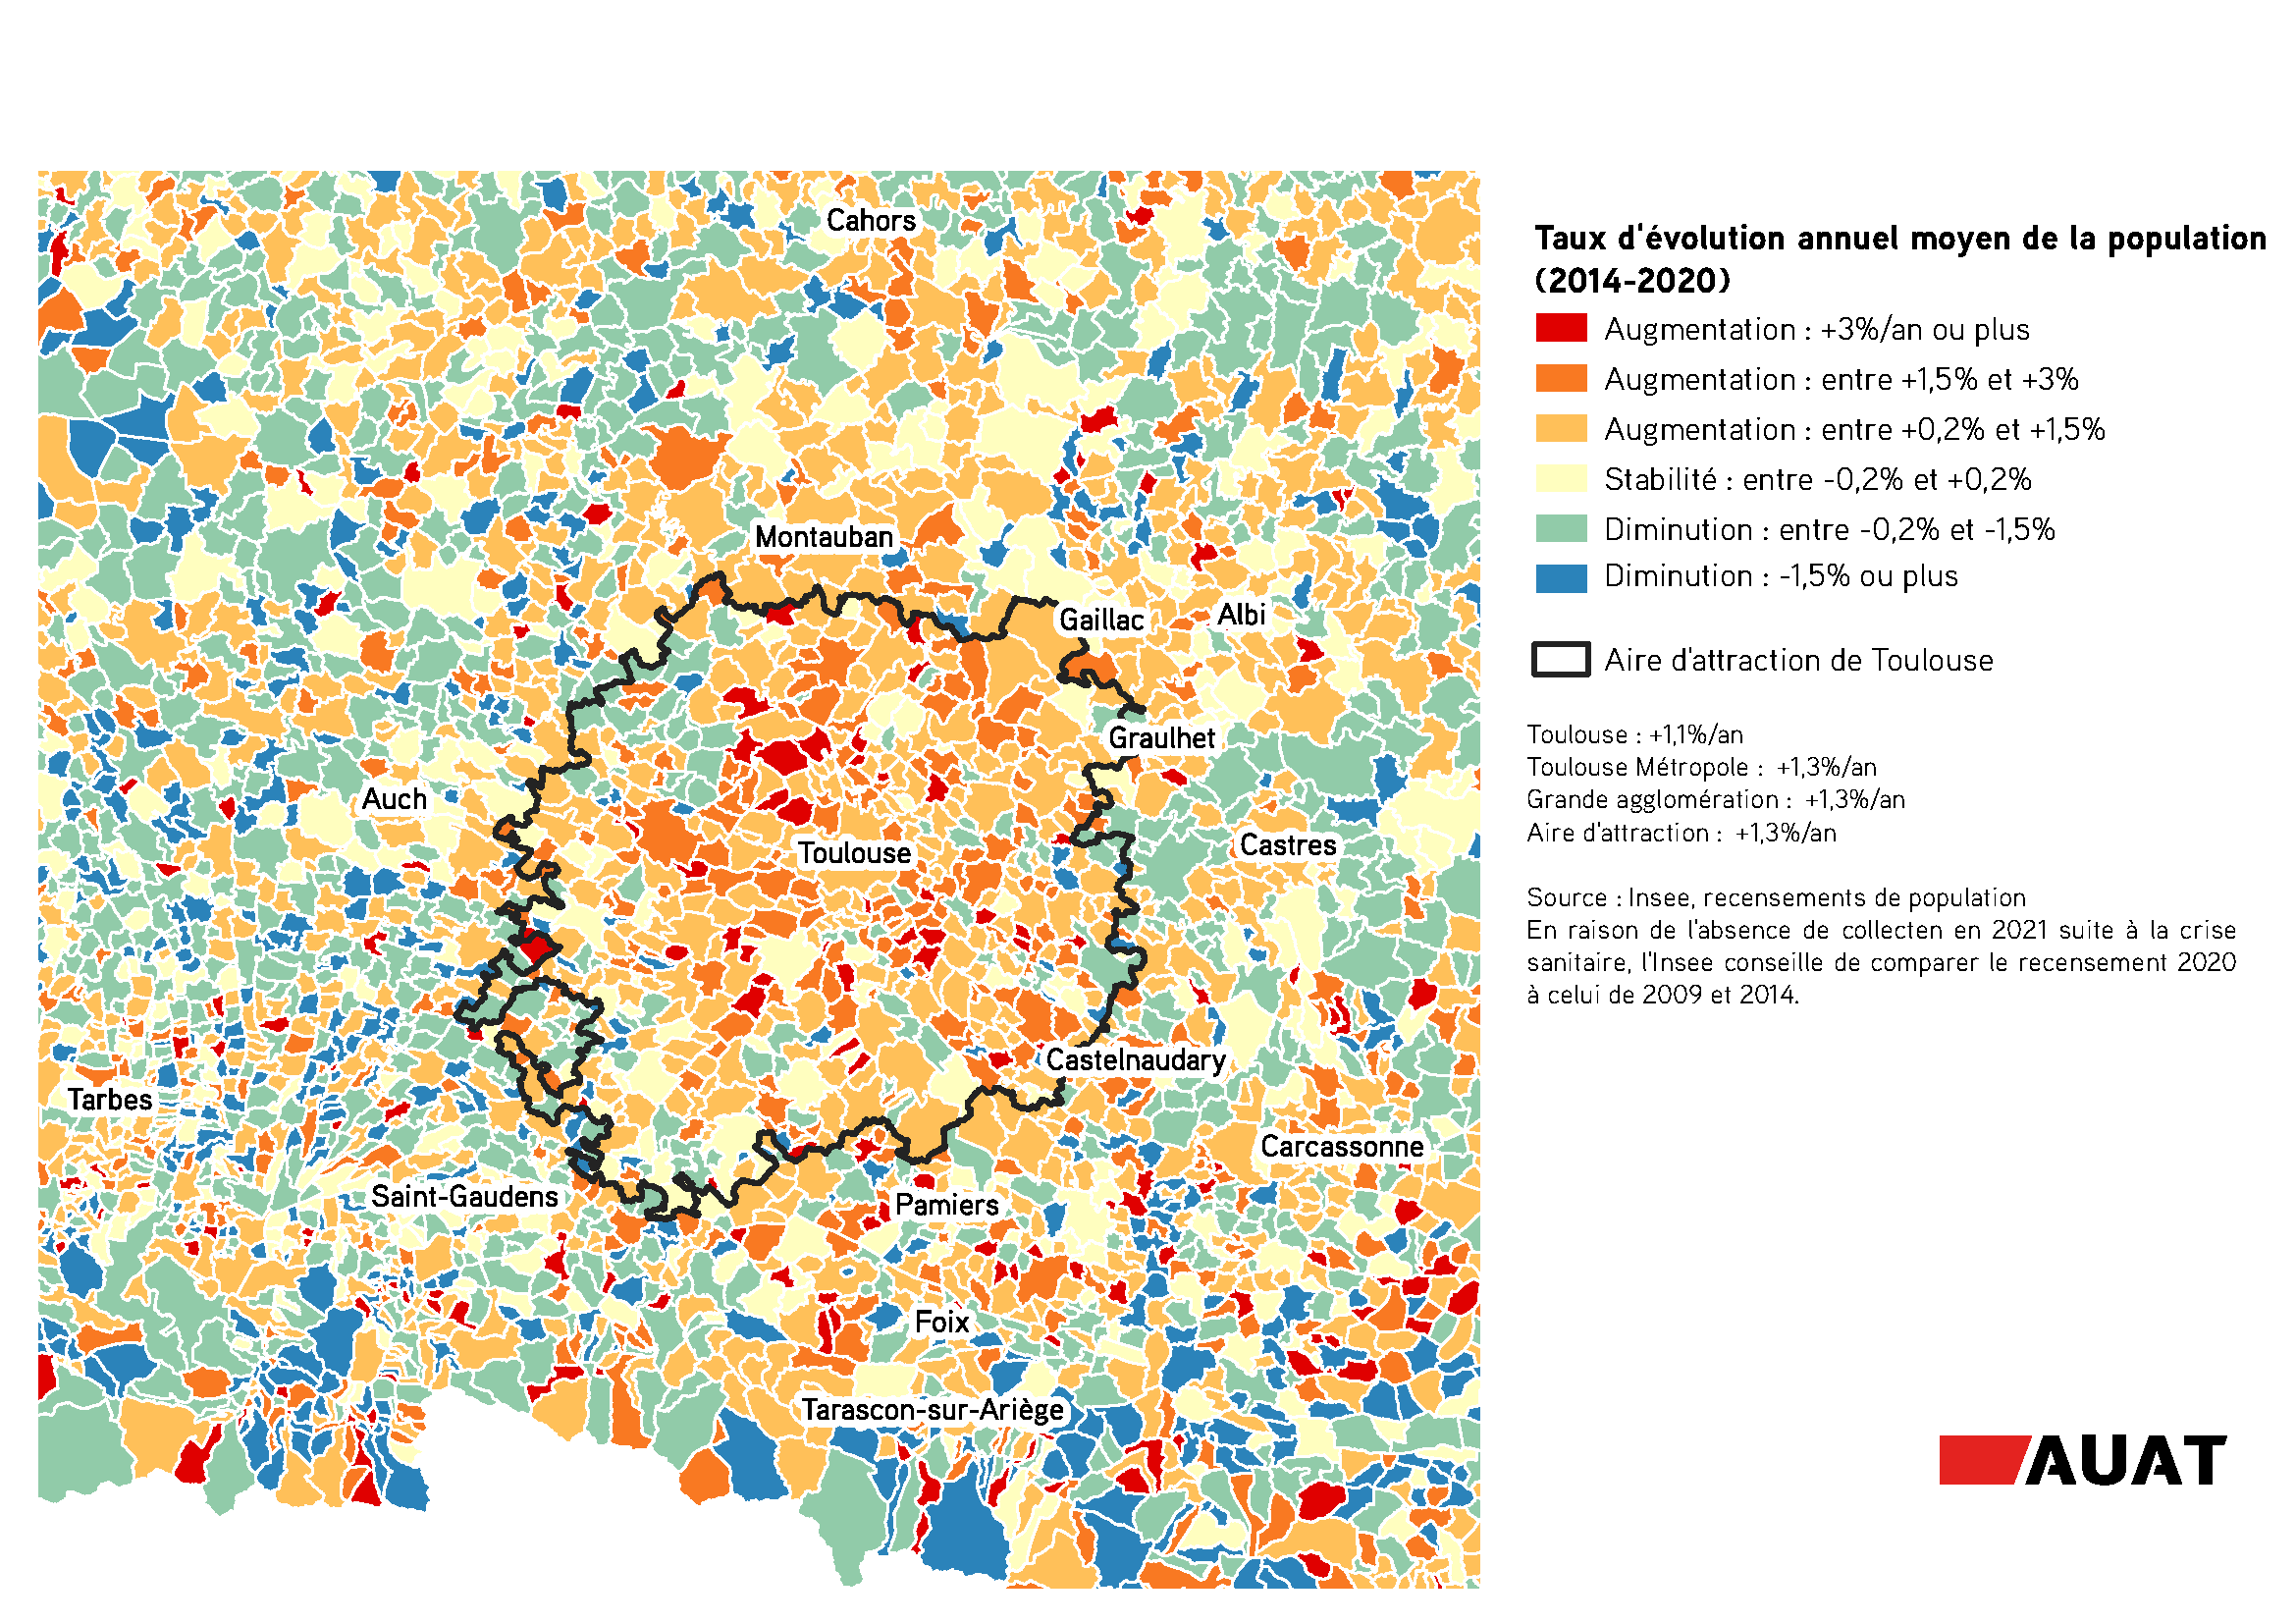 Cartographie de l'évolution de la population en moyenne par an, dans l'aire métropolitaine de Toulouse